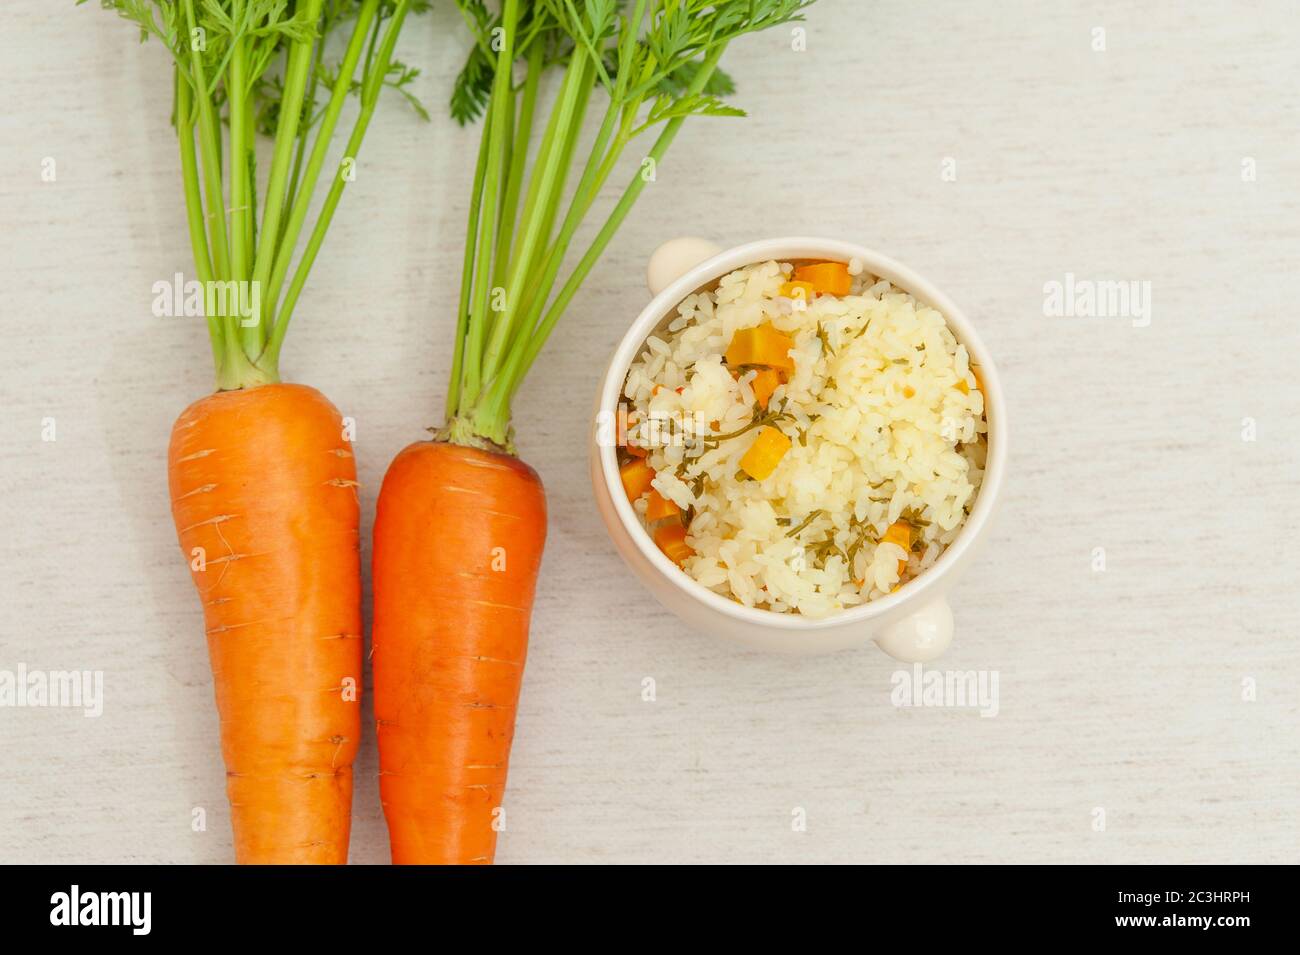 Vegetarische / vegane Küche - Rohe Karotten mit Blättern und eine Schüssel gekochten Reis mit Karotten. Isoliert auf weißem Hintergrund. Speicherplatz kopieren. Draufsicht. Stockfoto